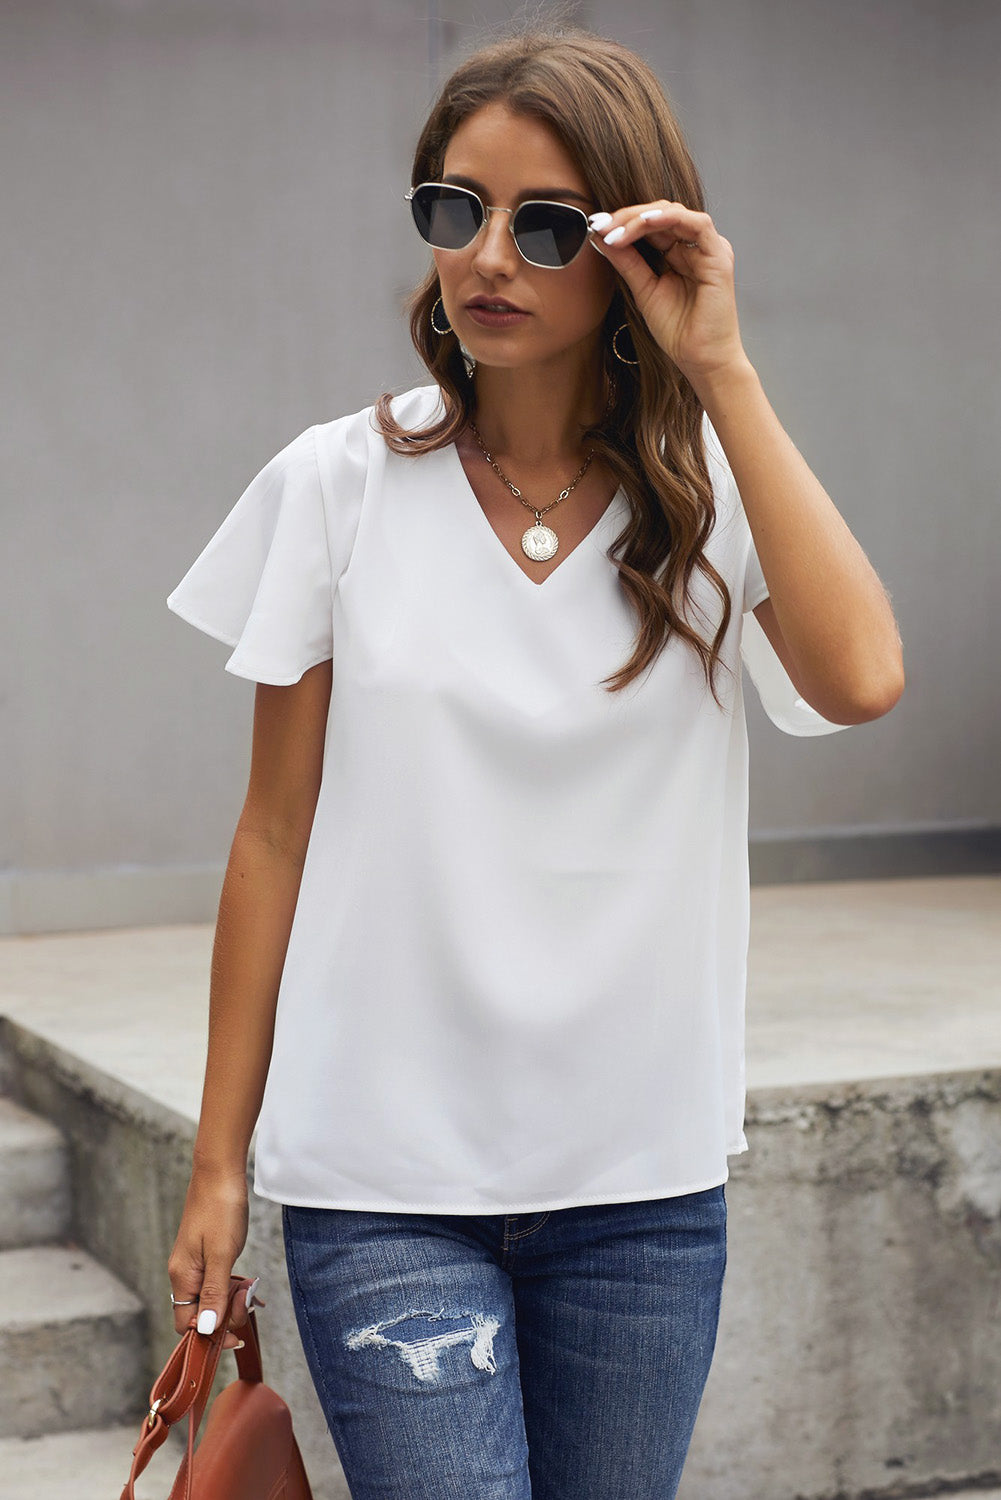 T-shirt blanc à manches courtes et col en V